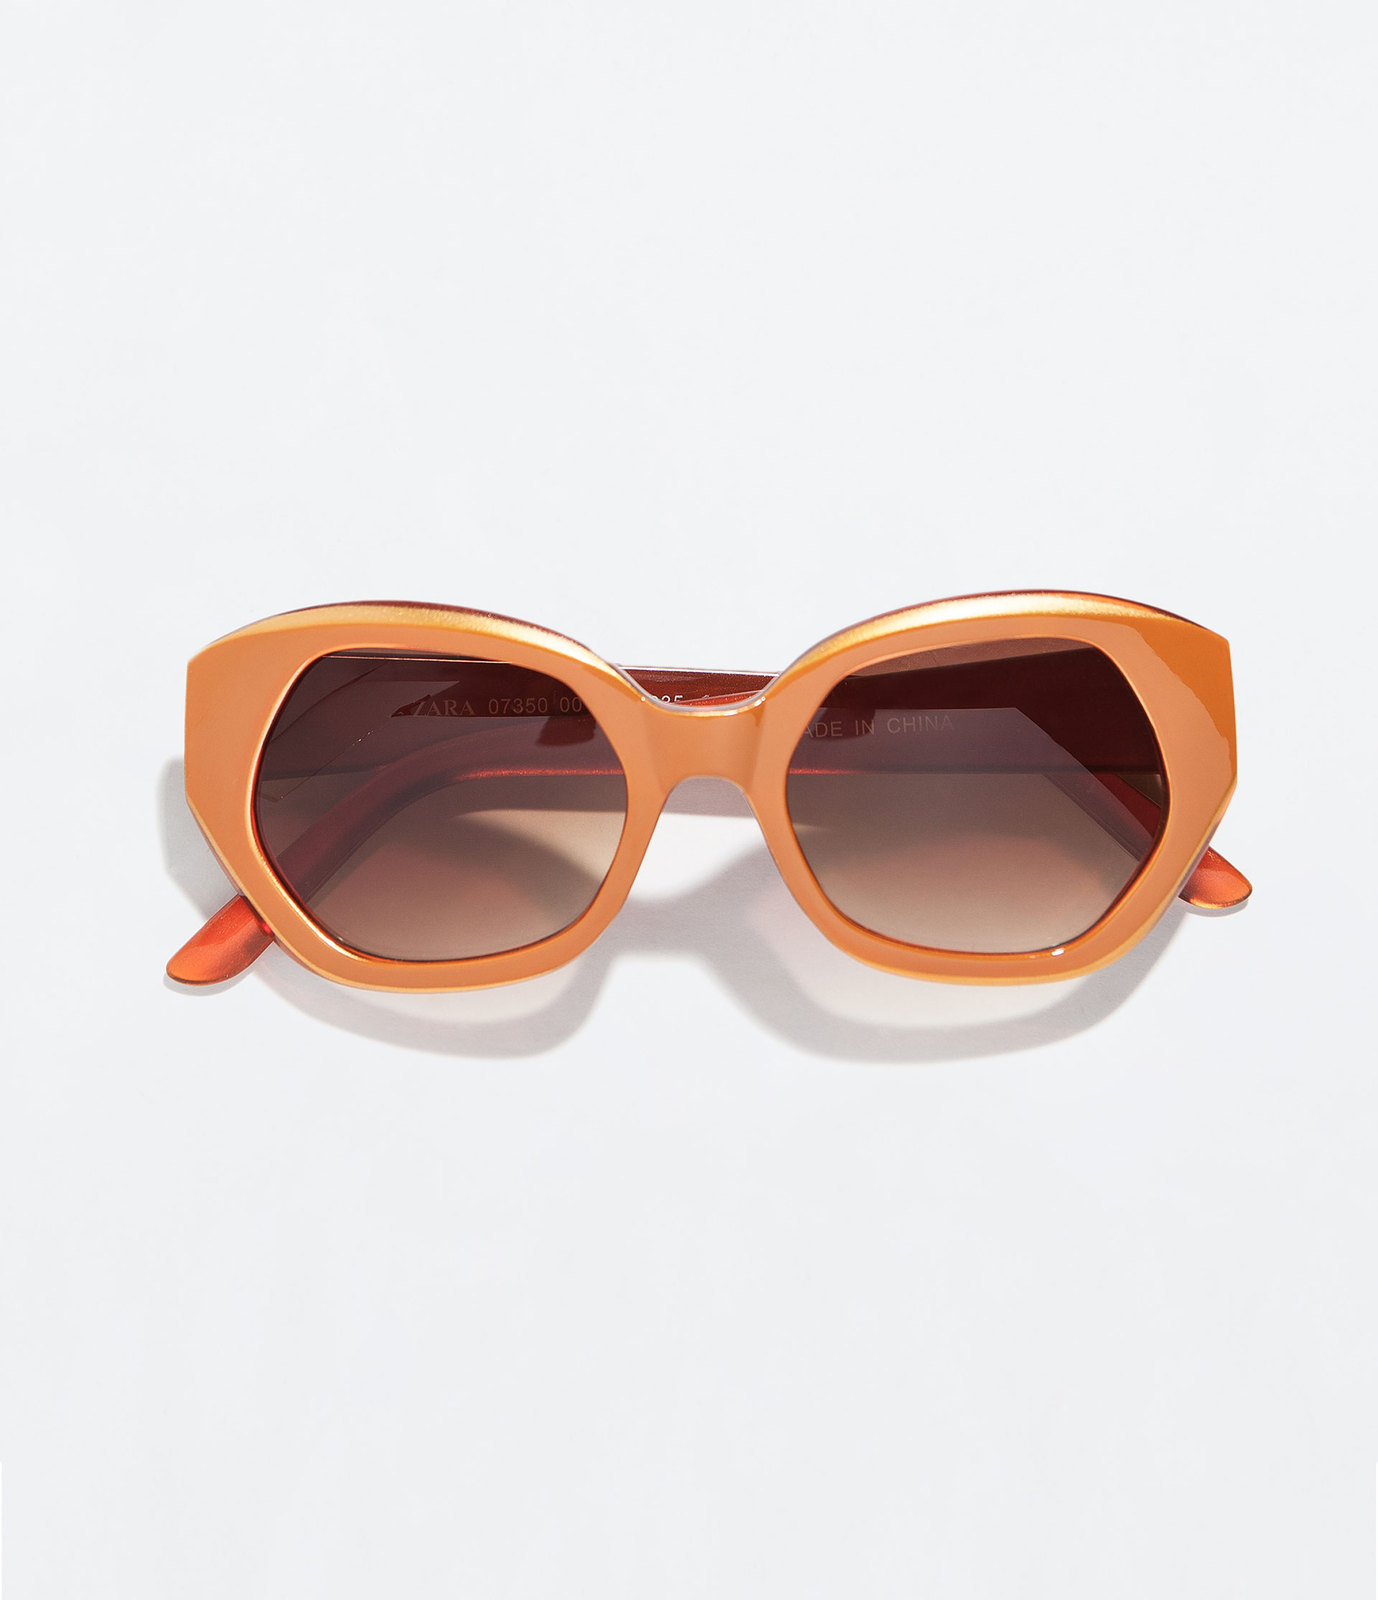 Zara karamellszínű napszemüveg fotója